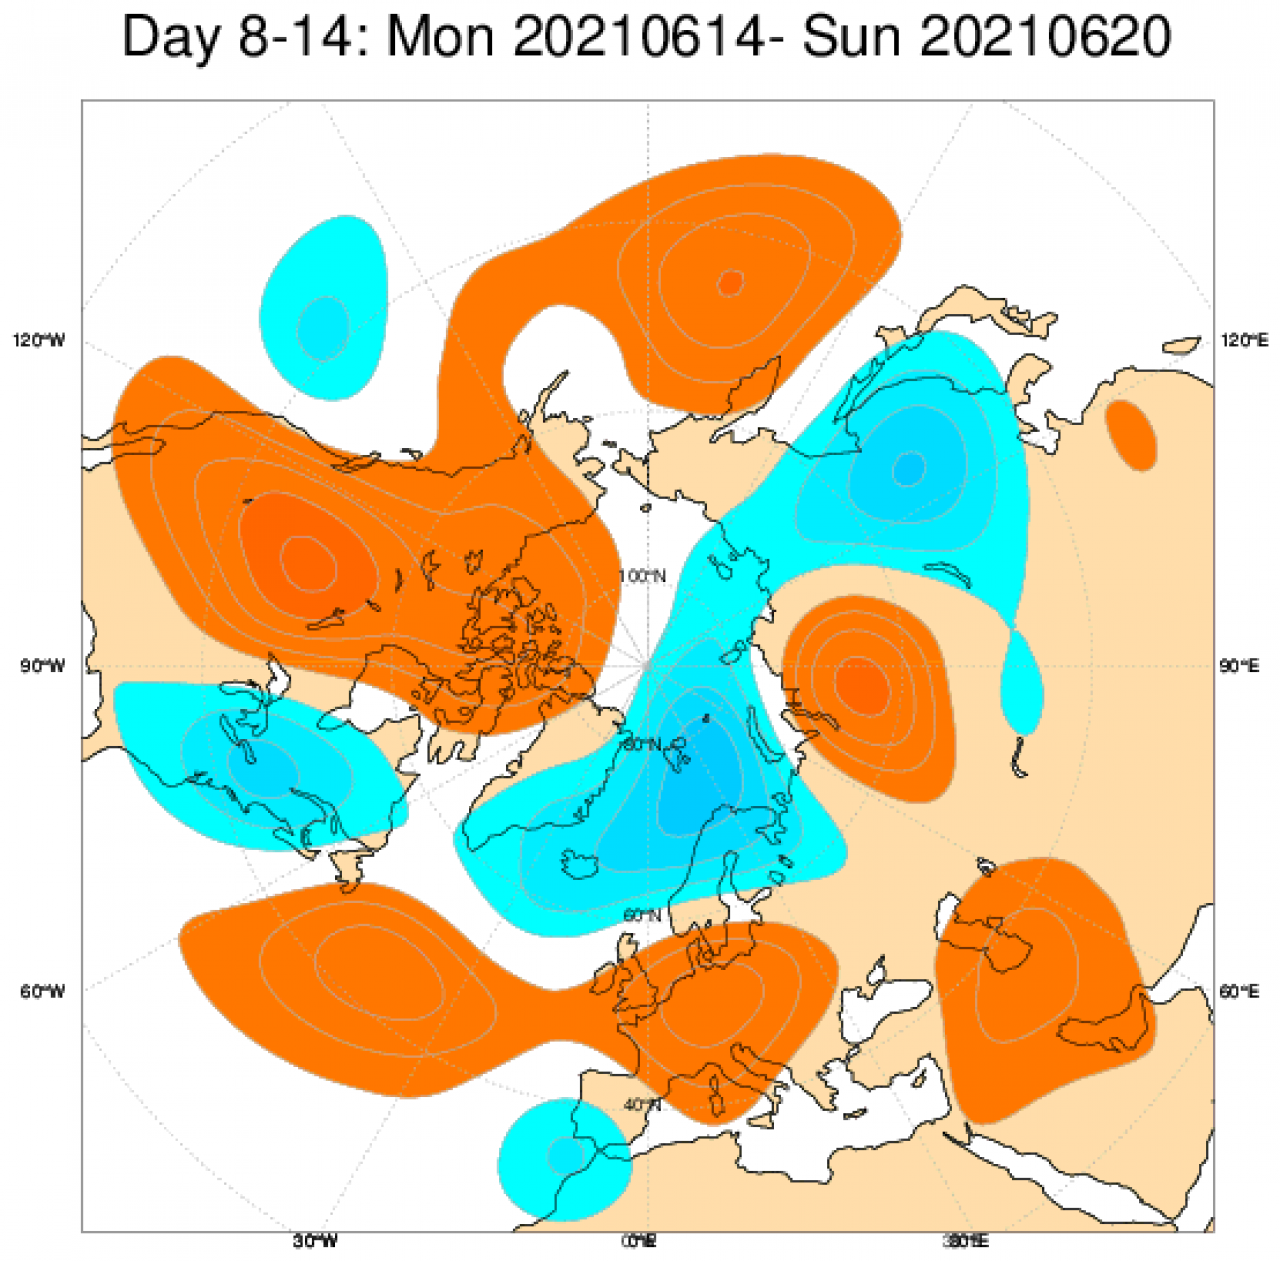 Tendenza meteo tra il 14 e il 20 giugno secondo il modello ECMWF